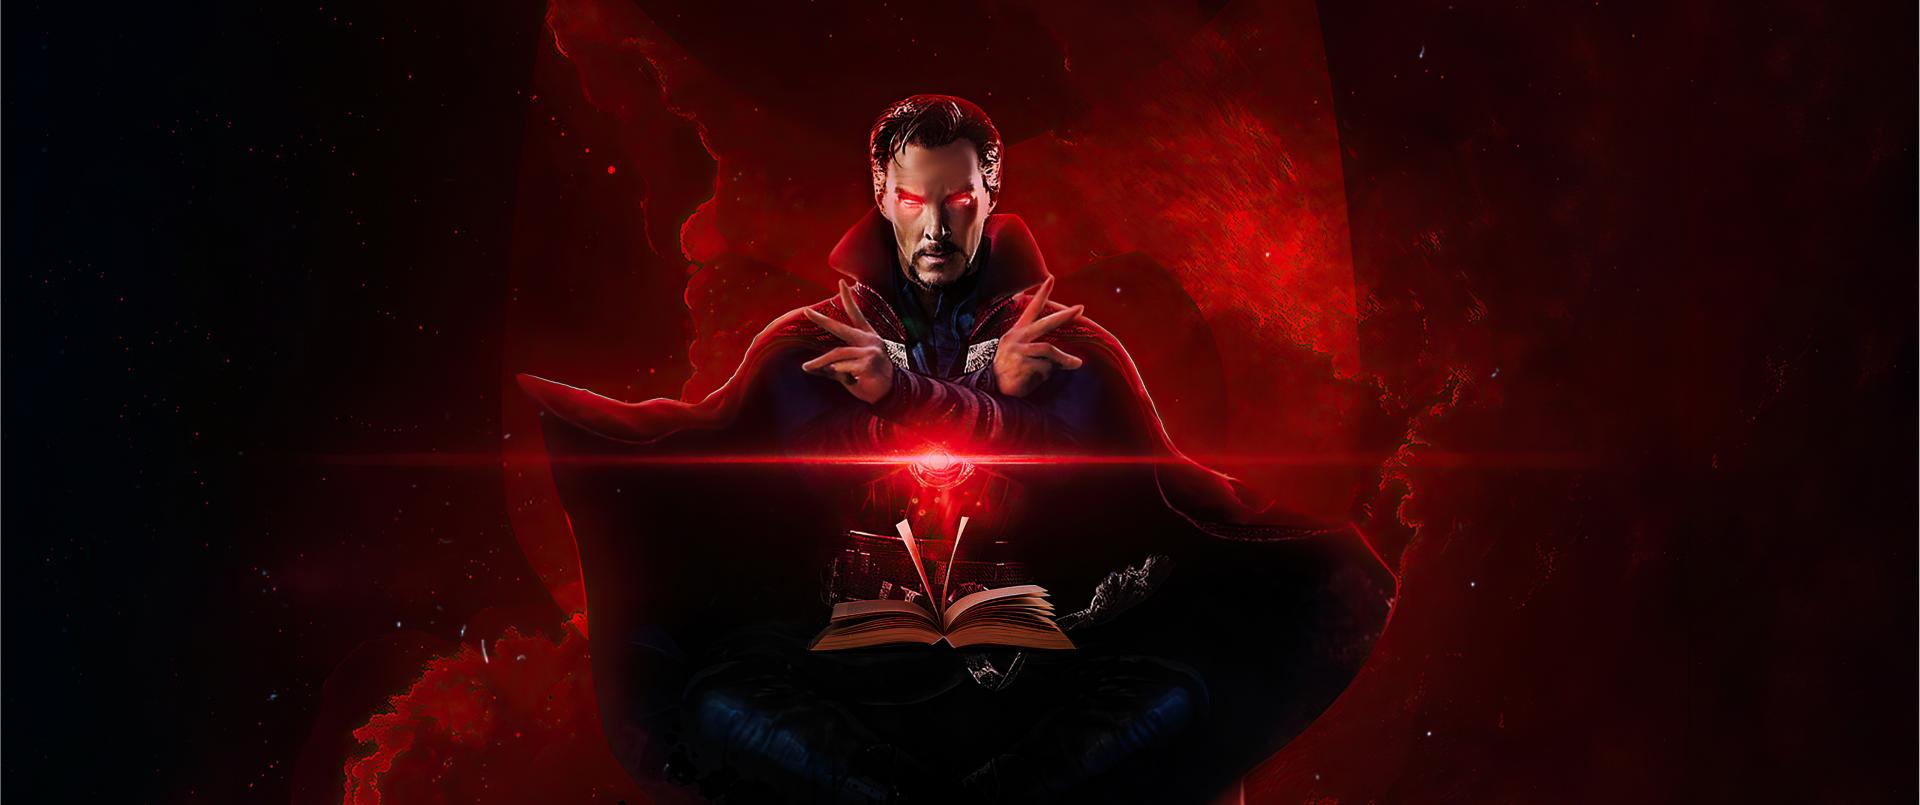 Marvel опубликовала тизер и постеры новой части «Доктора Стрэнджа»